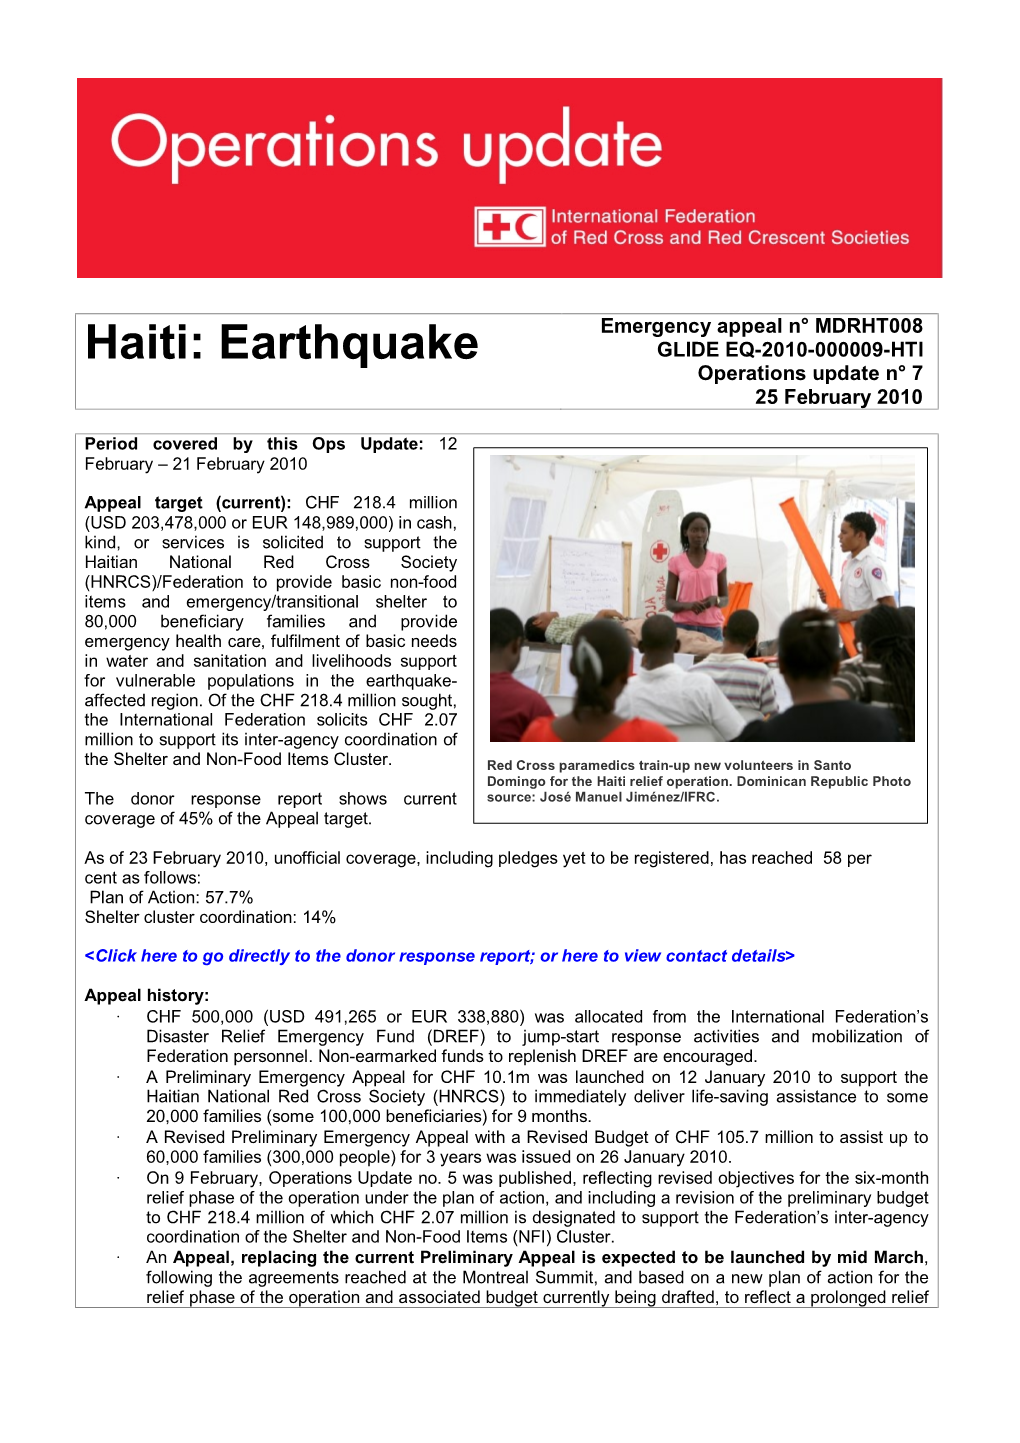 Haiti: Earthquake GLIDE EQ-2010-000009-HTI Operations Update N° 7 25 February 2010